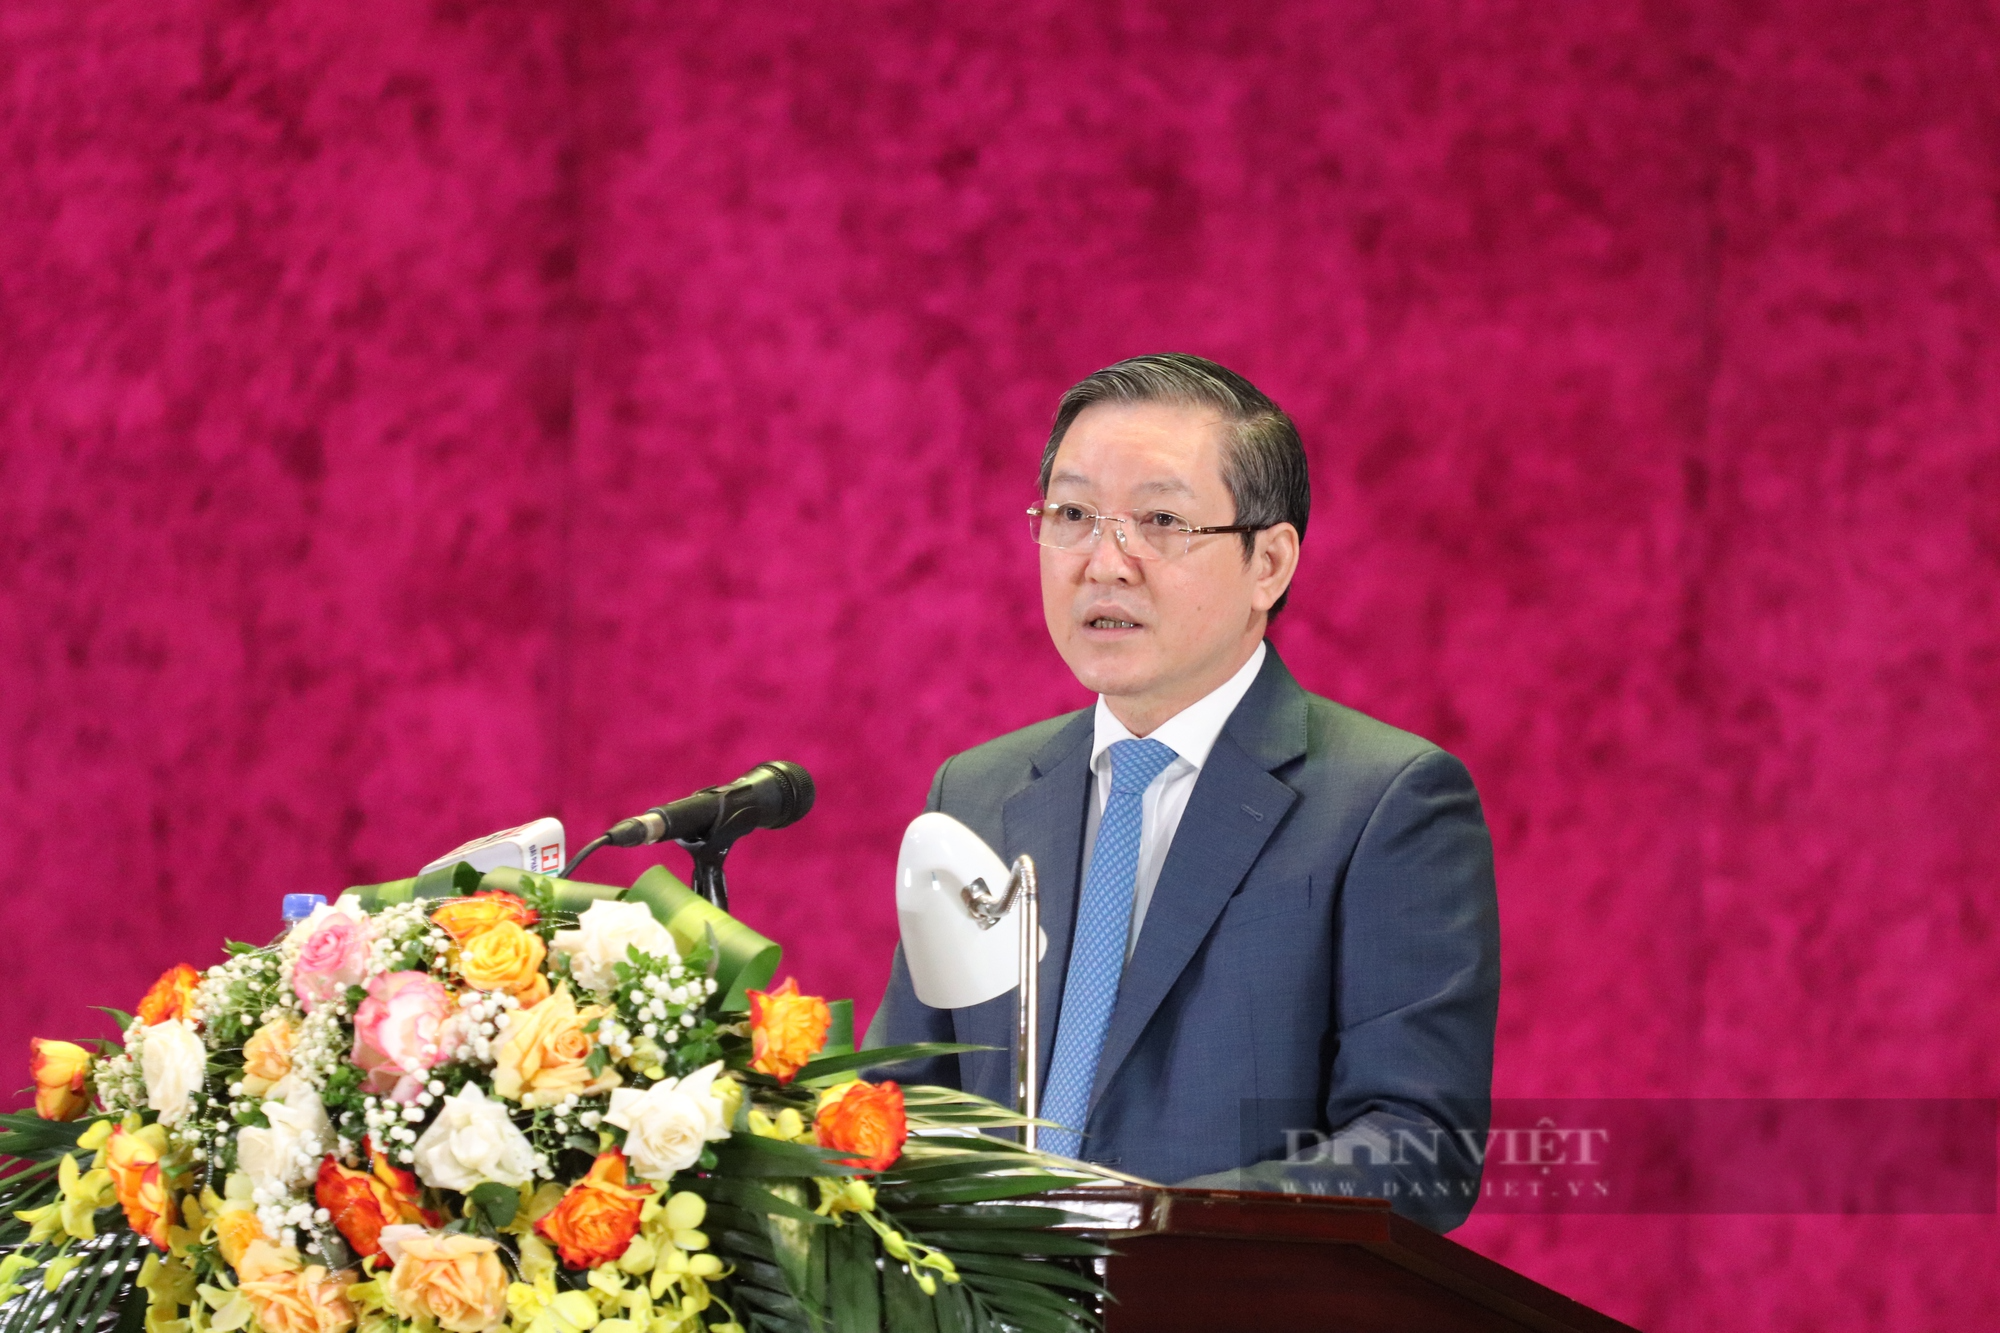 Đại hội đại biểu Hội Nông dân tỉnh Hòa Bình lần thứ XI: Ông Lê Văn Thạch tái cử chức Chủ tịch  - Ảnh 1.